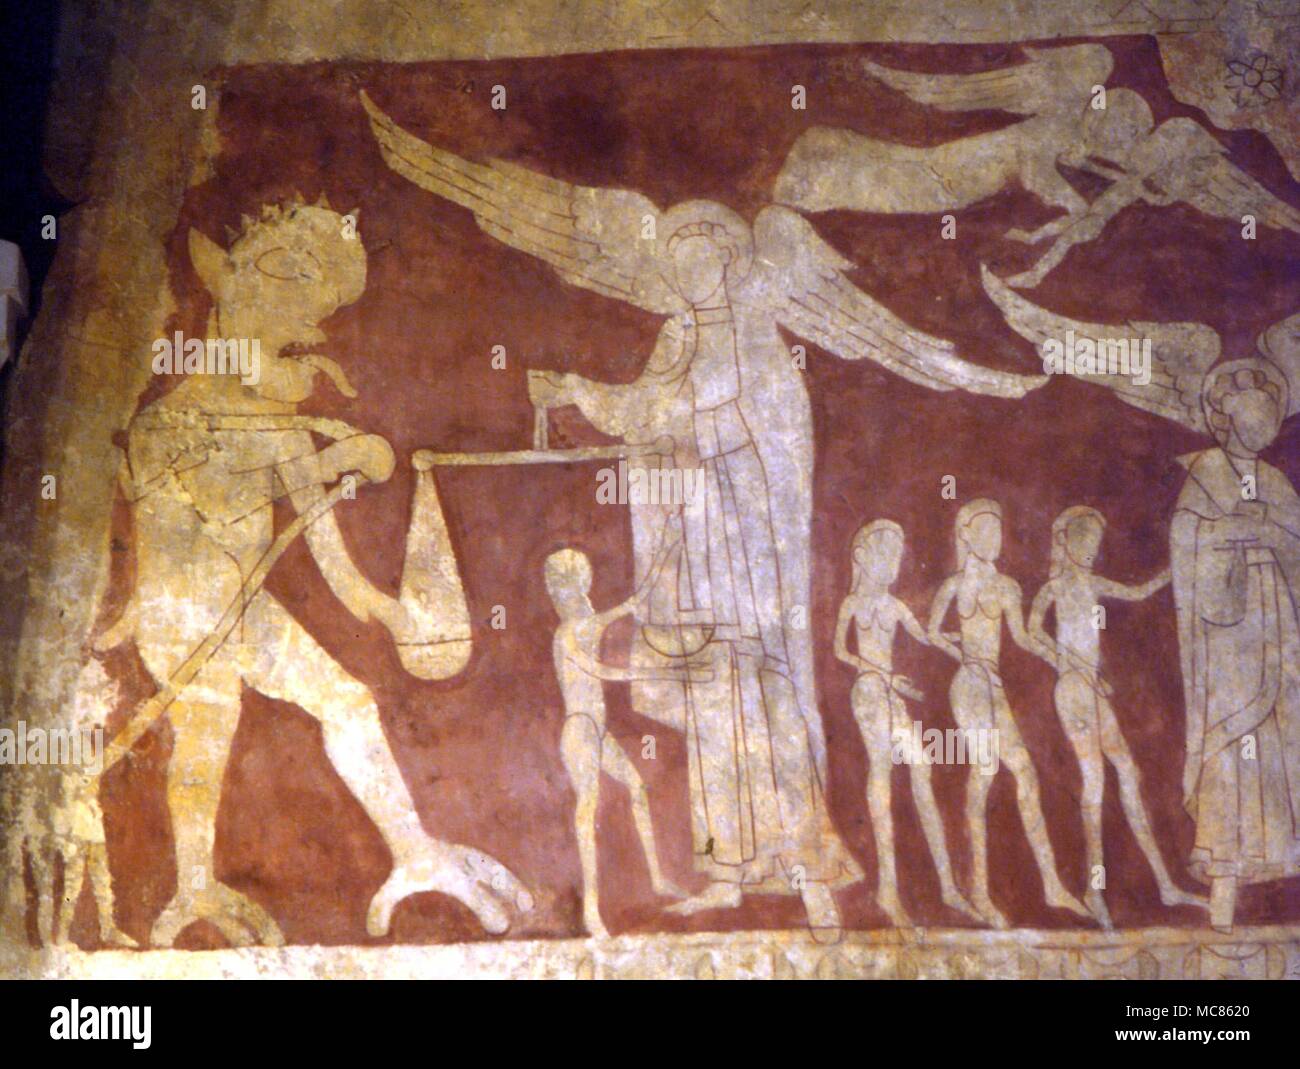 CHRISTIAN Chaldon fresco Dämon kämpfen mit der Waage von St. Michael, Versuch, Seelen zu gewinnen, für die Hölle unten. Detail des 12. Jahrhunderts freien im Chaldon (Kirche) in Surrey Stockfoto